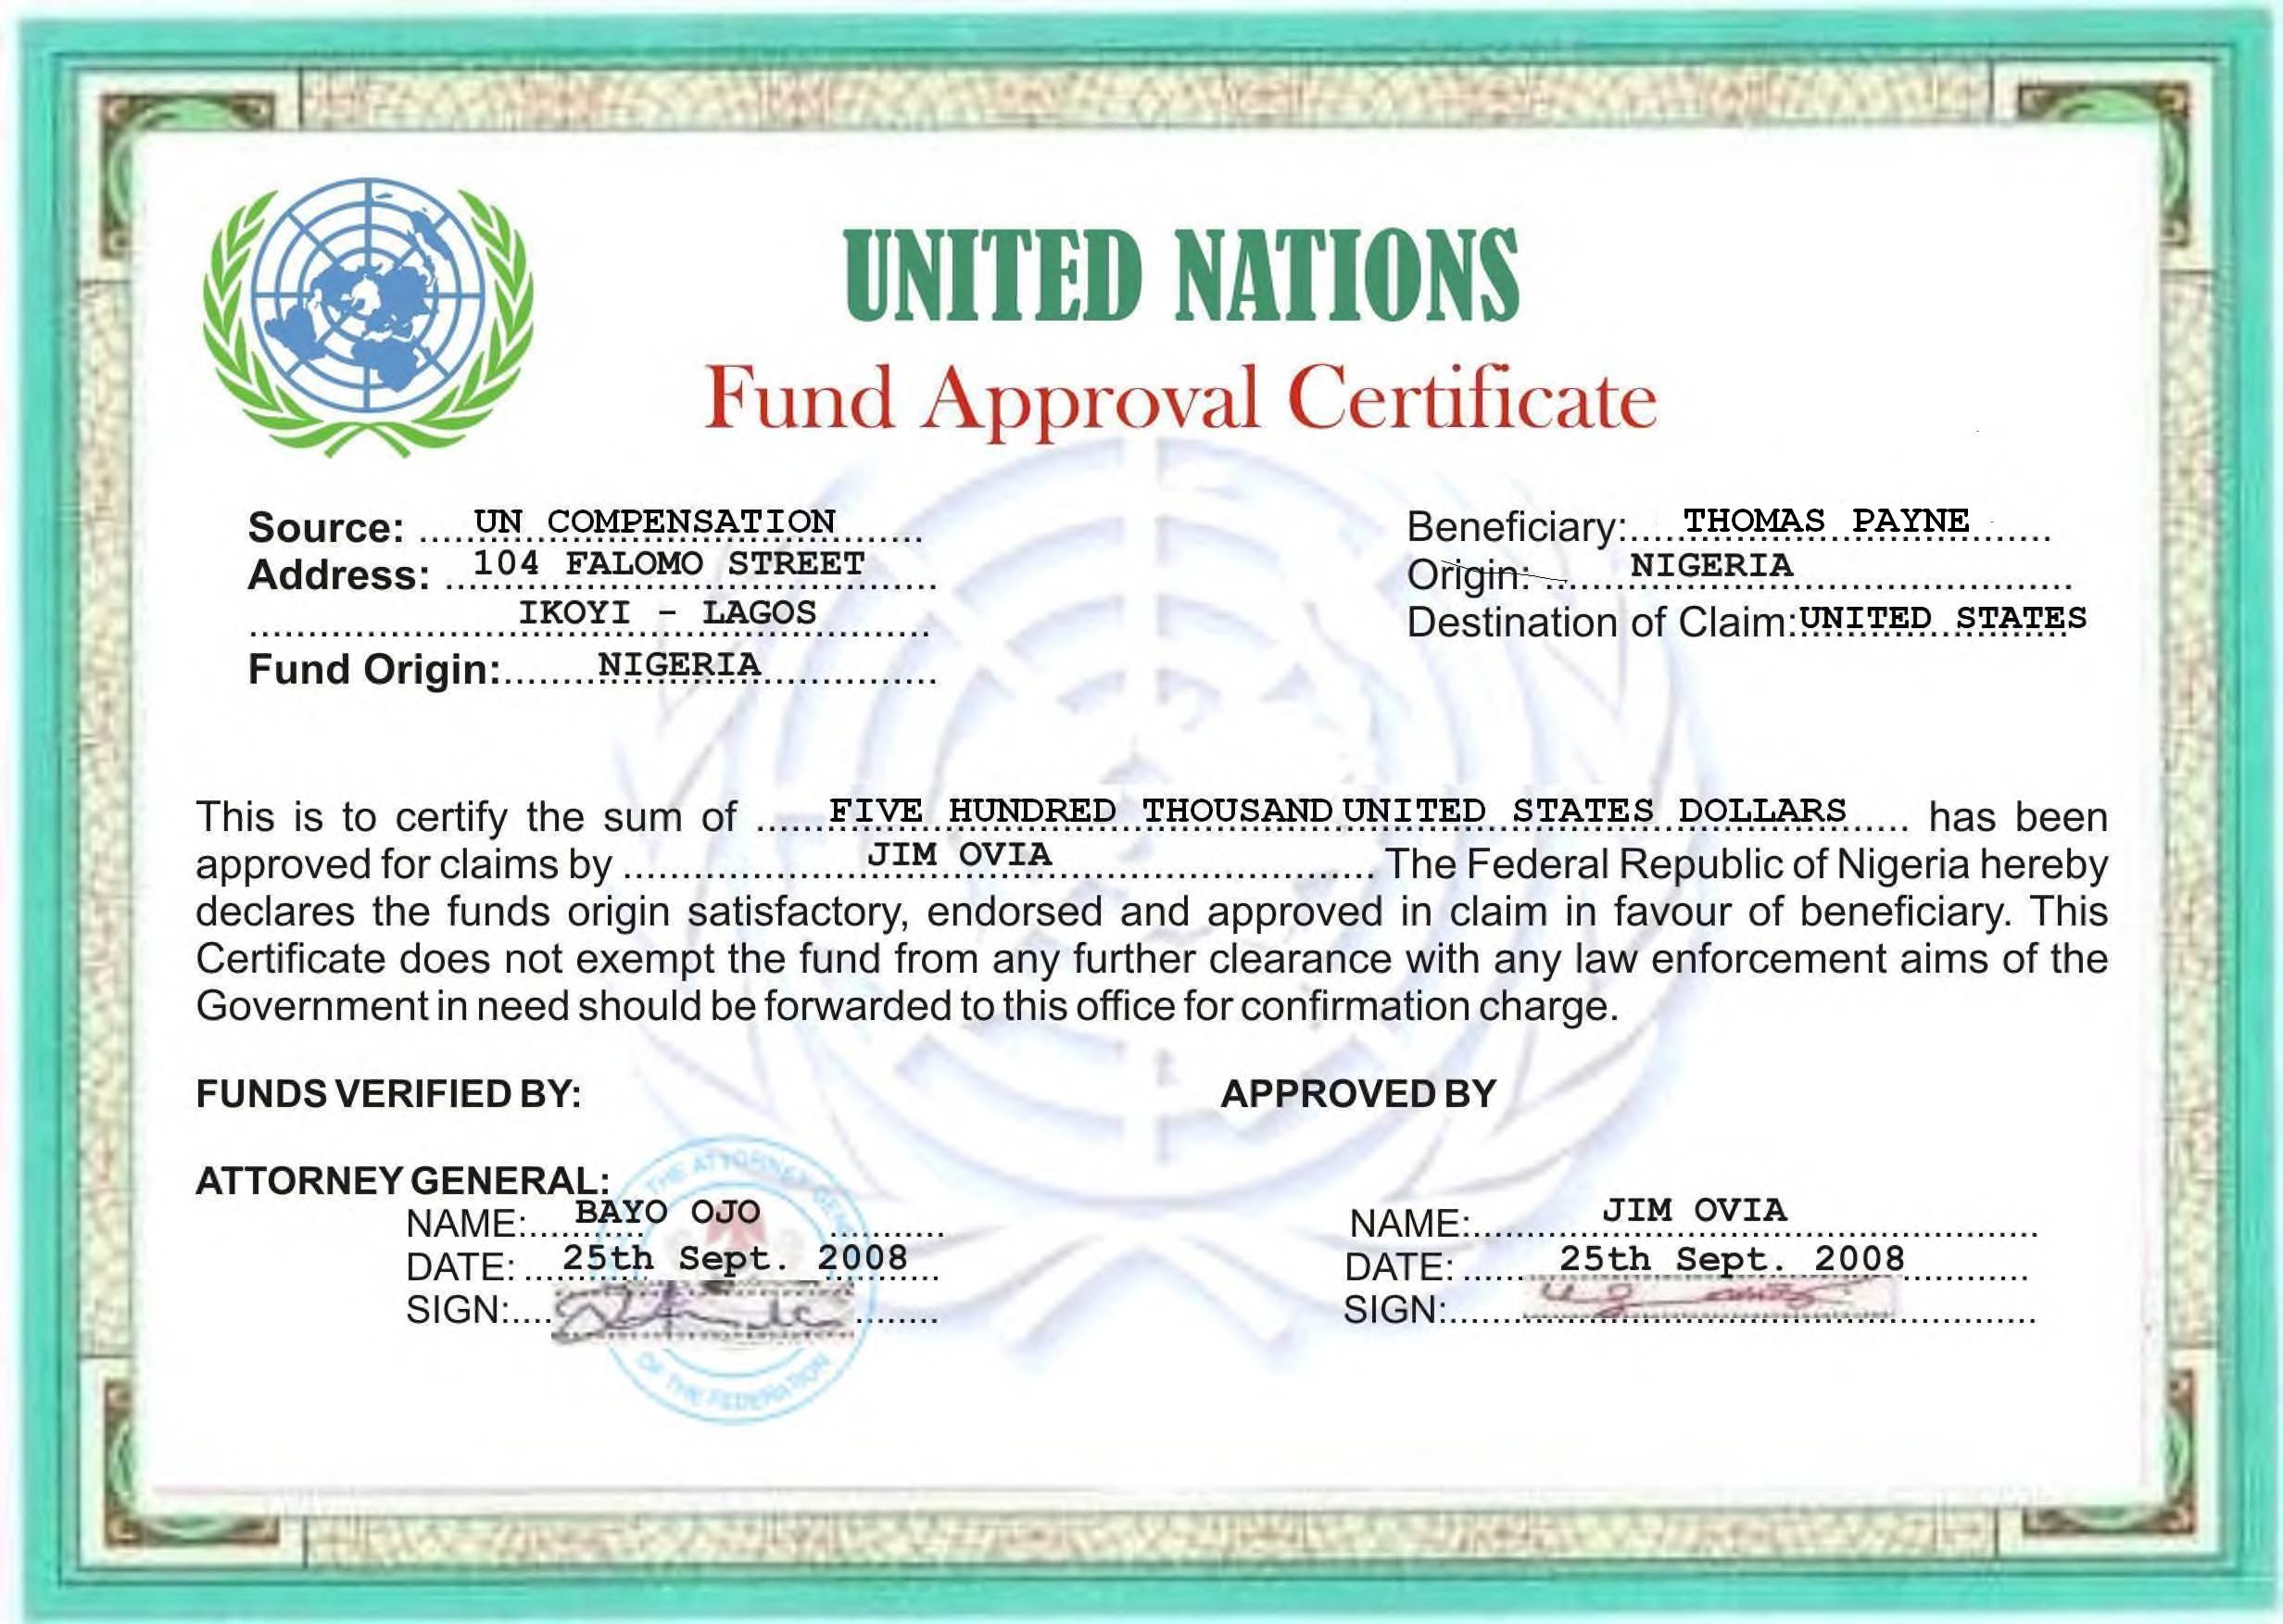 Silly-ass UN Document